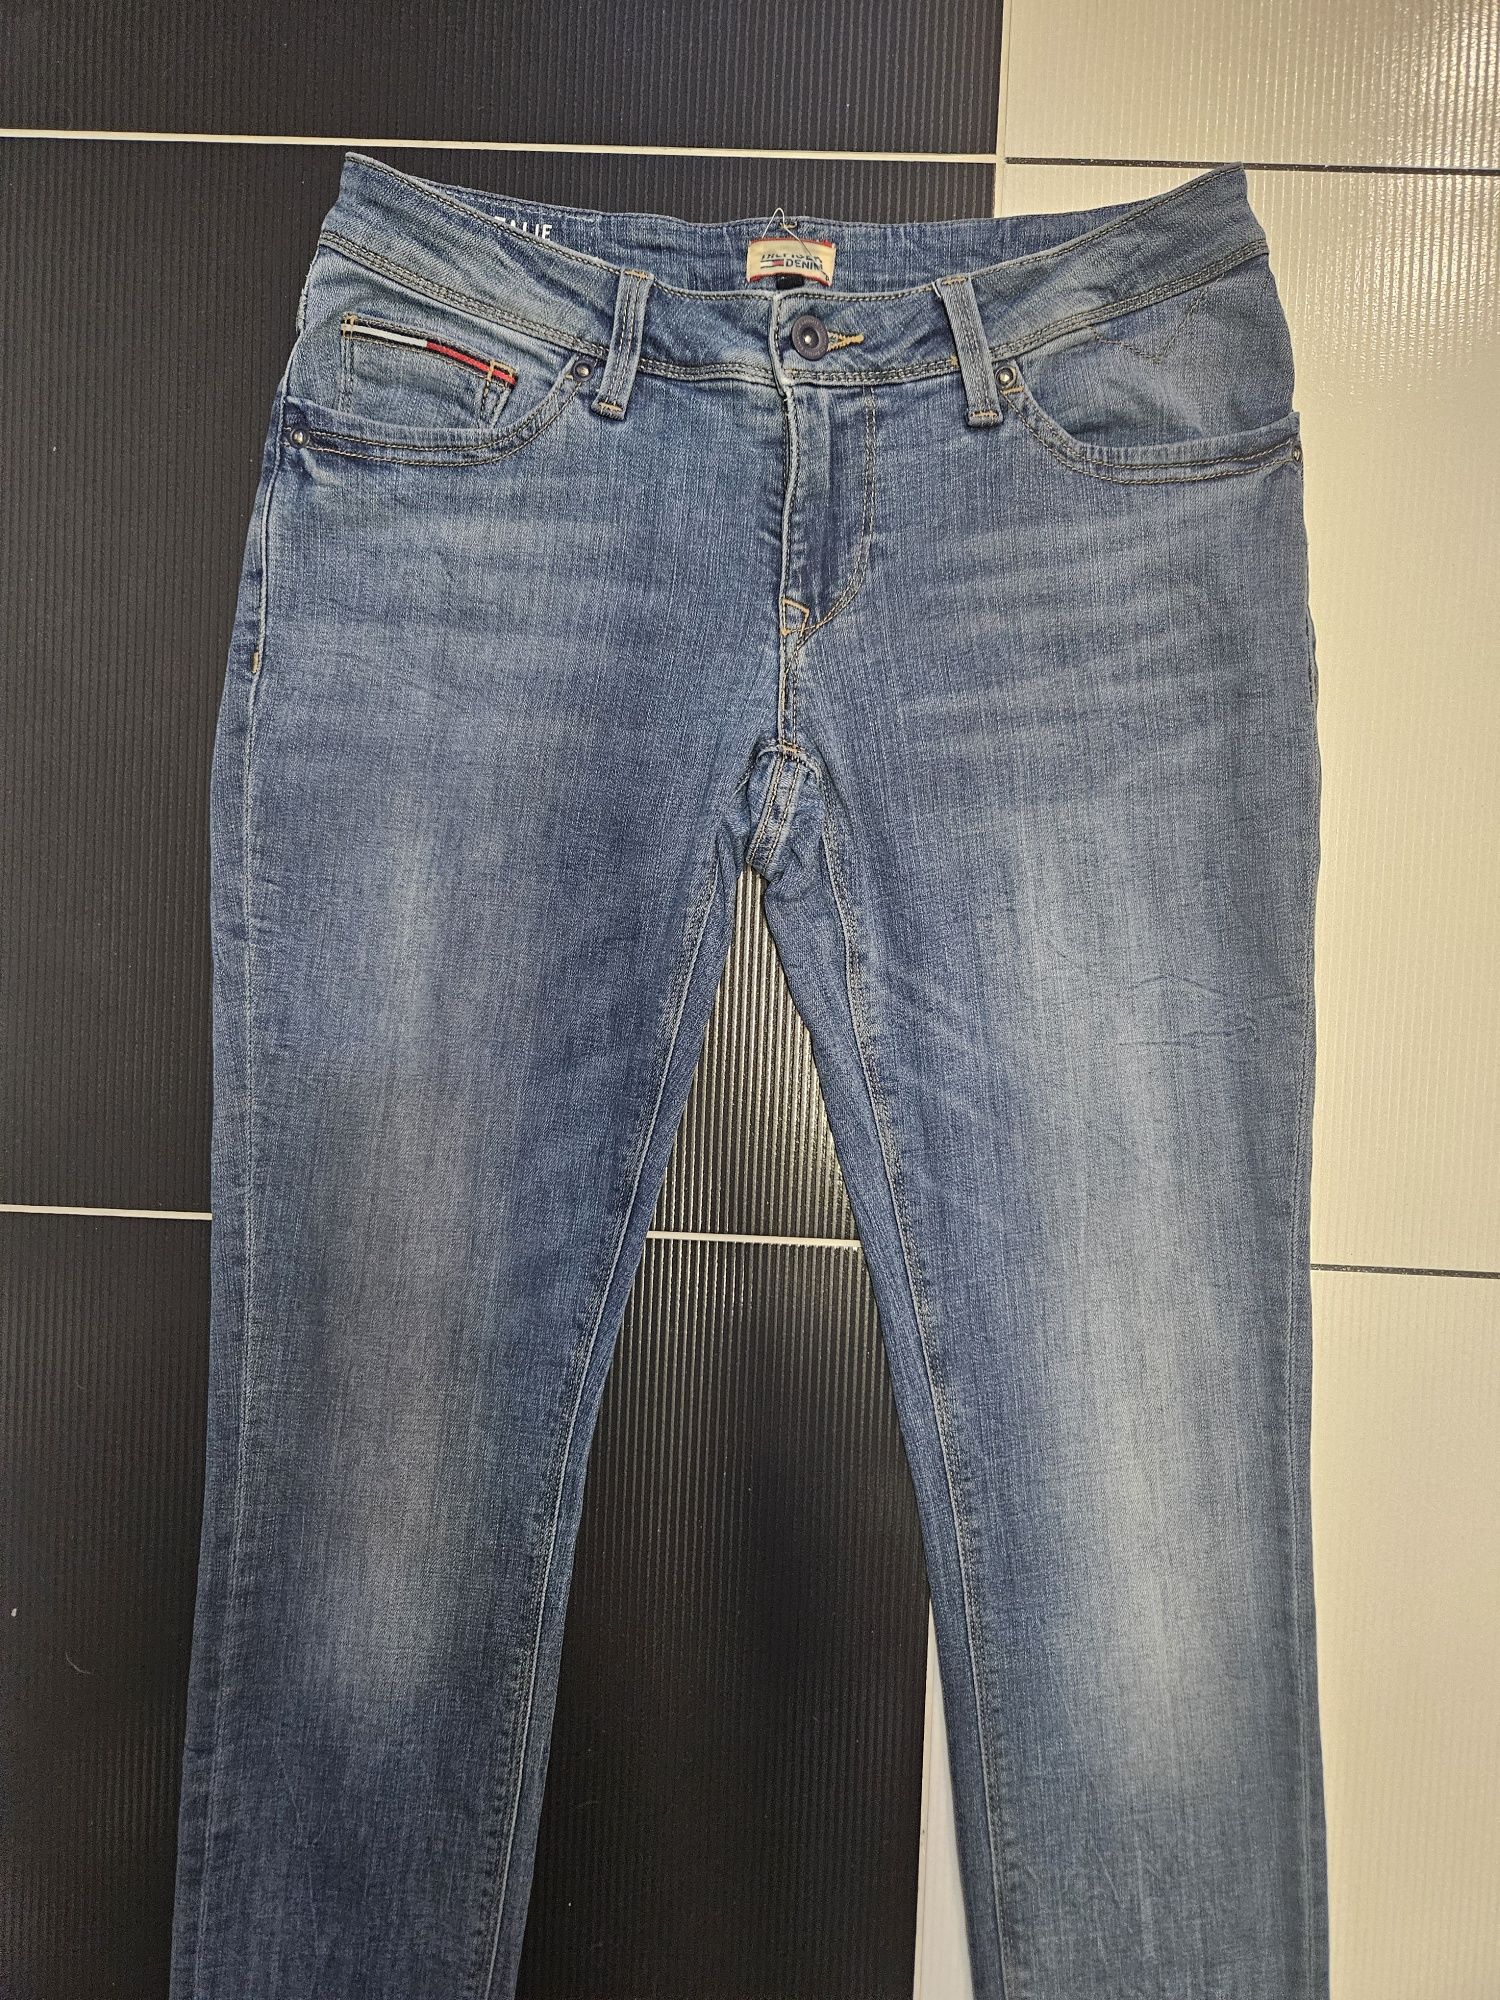 Jeans ideał tommy 27.5 jasne spodnie